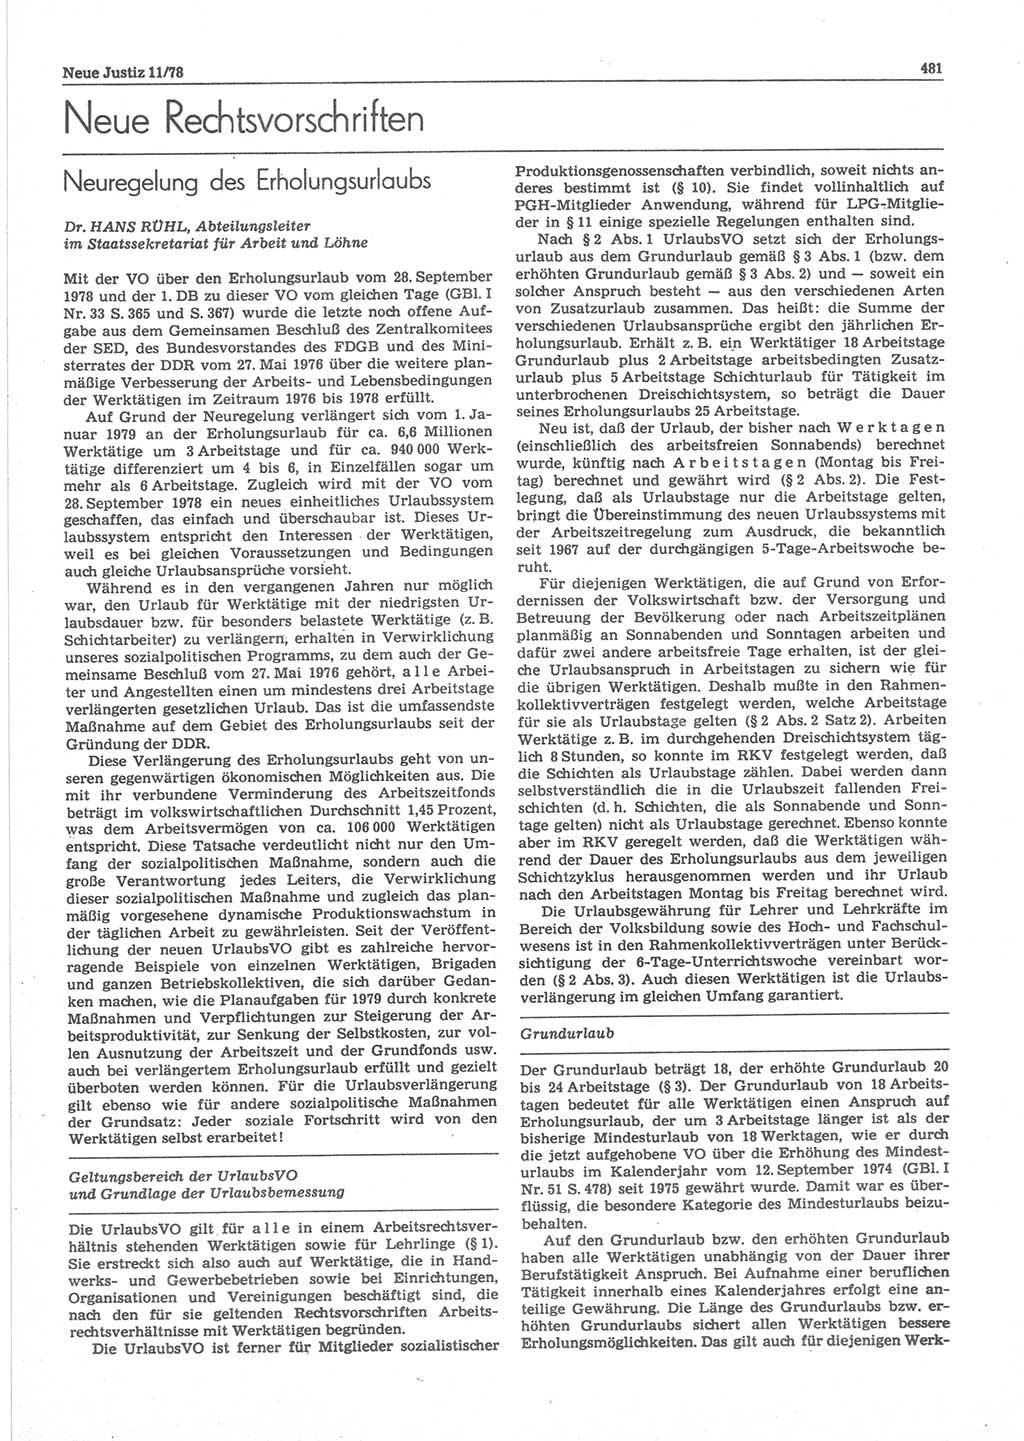 Neue Justiz (NJ), Zeitschrift für sozialistisches Recht und Gesetzlichkeit [Deutsche Demokratische Republik (DDR)], 32. Jahrgang 1978, Seite 481 (NJ DDR 1978, S. 481)